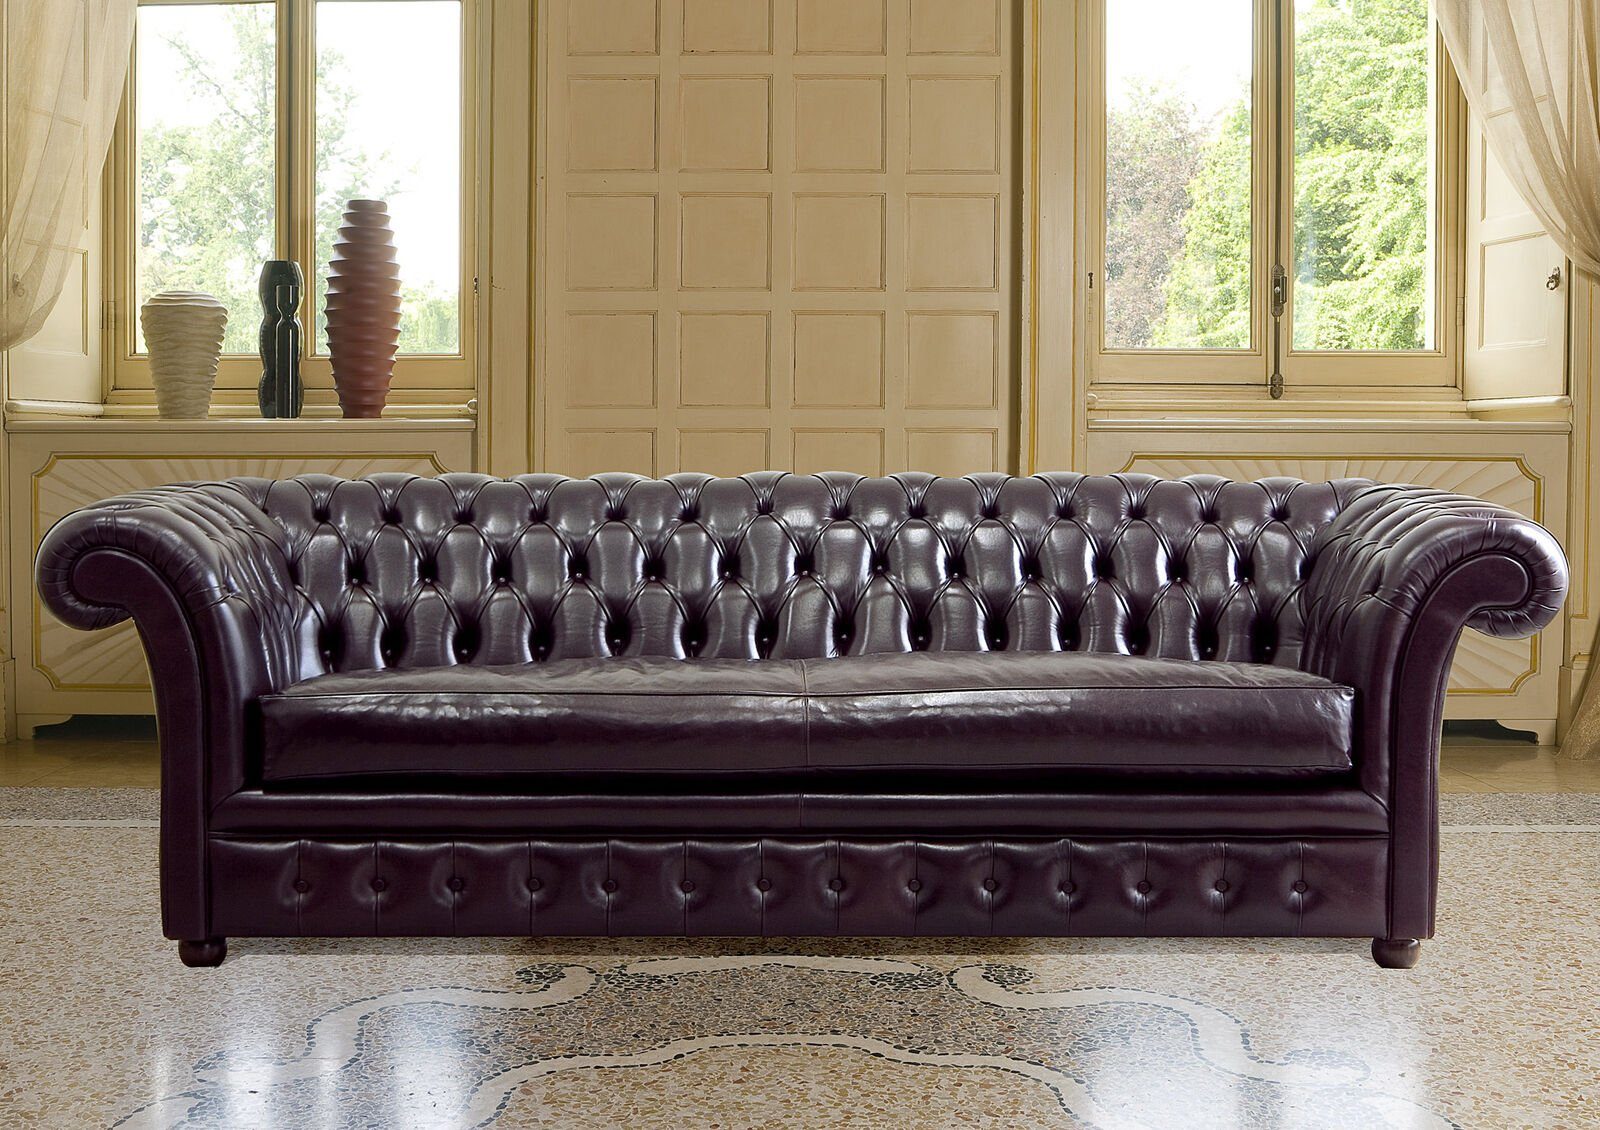 JVmoebel Chesterfield-Sofa Polster Couch Sofa Klassik Chesterfield 3 Sitzer 100% Leder Sofort, Made in Europe